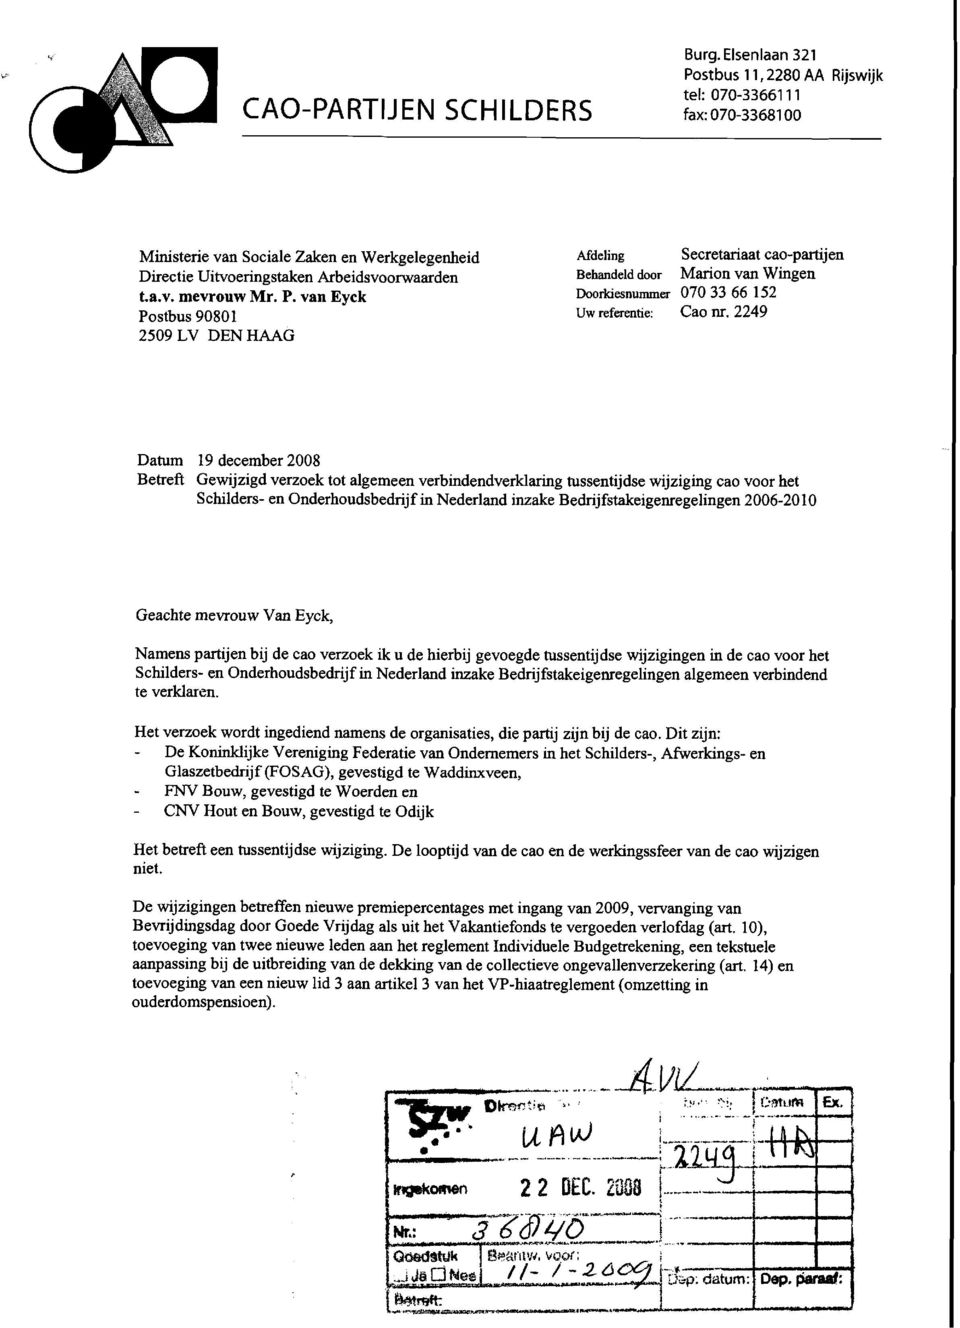 2249 Datum 19 december 2008 Betreft Gewijzigd verzoek tot algemeen verbindendverklaring tussentijdse wijziging cao voor het Schilders- en Onderhoudsbedrijf in Nederland inzake